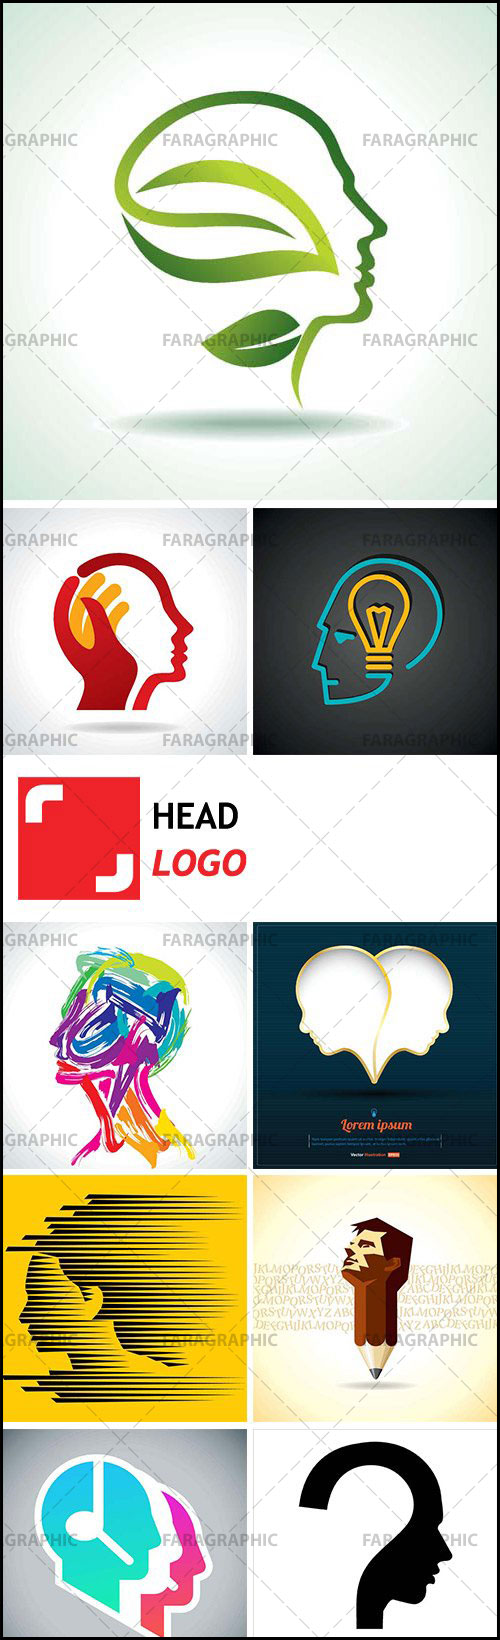 دانلود لوگو های سر انسان - Head Logos